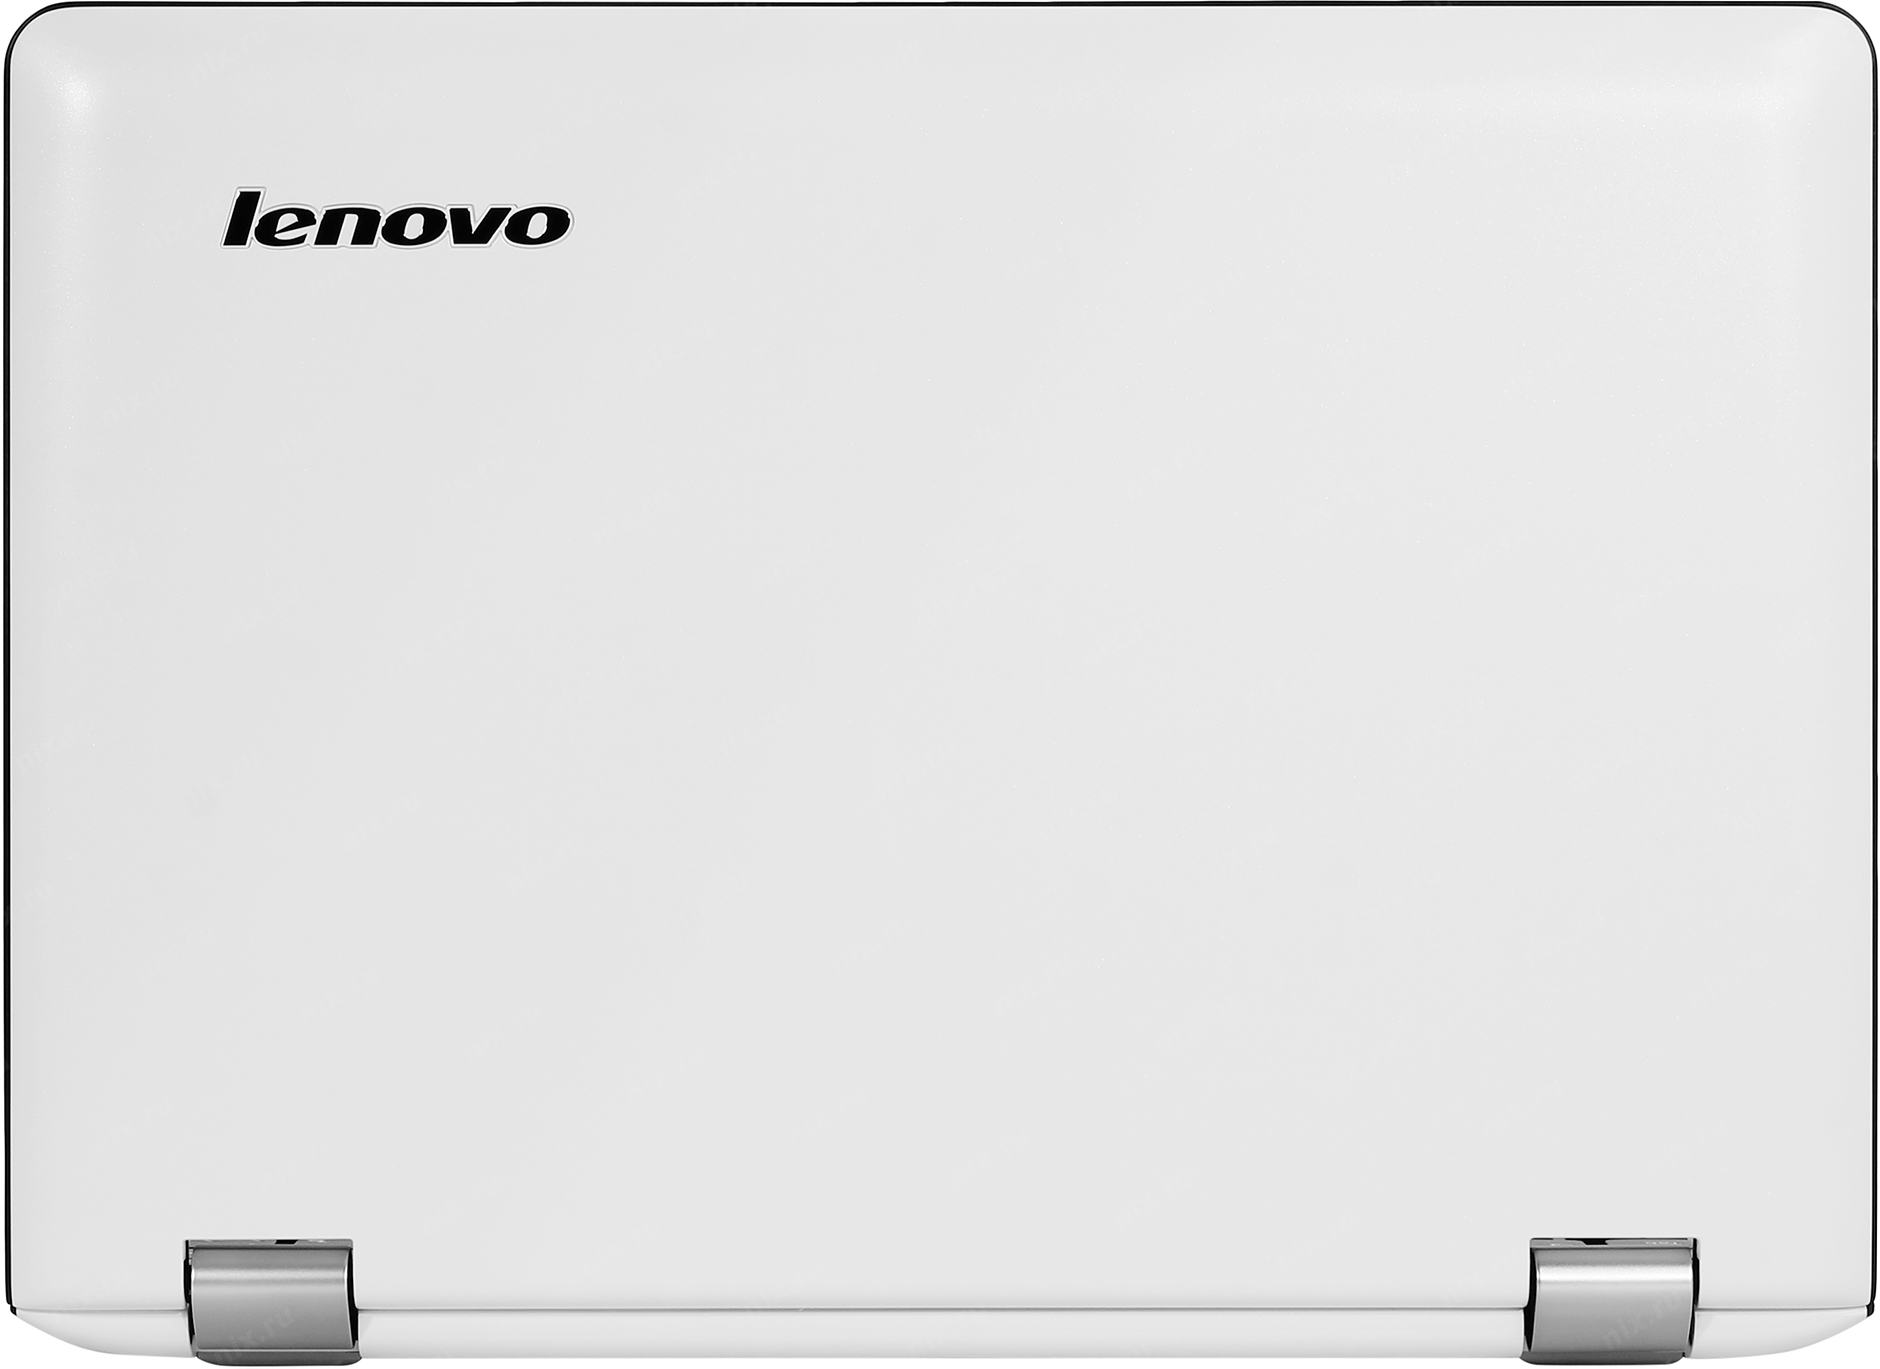 Купить Ноутбук Lenovo Yoga 300-11ibr